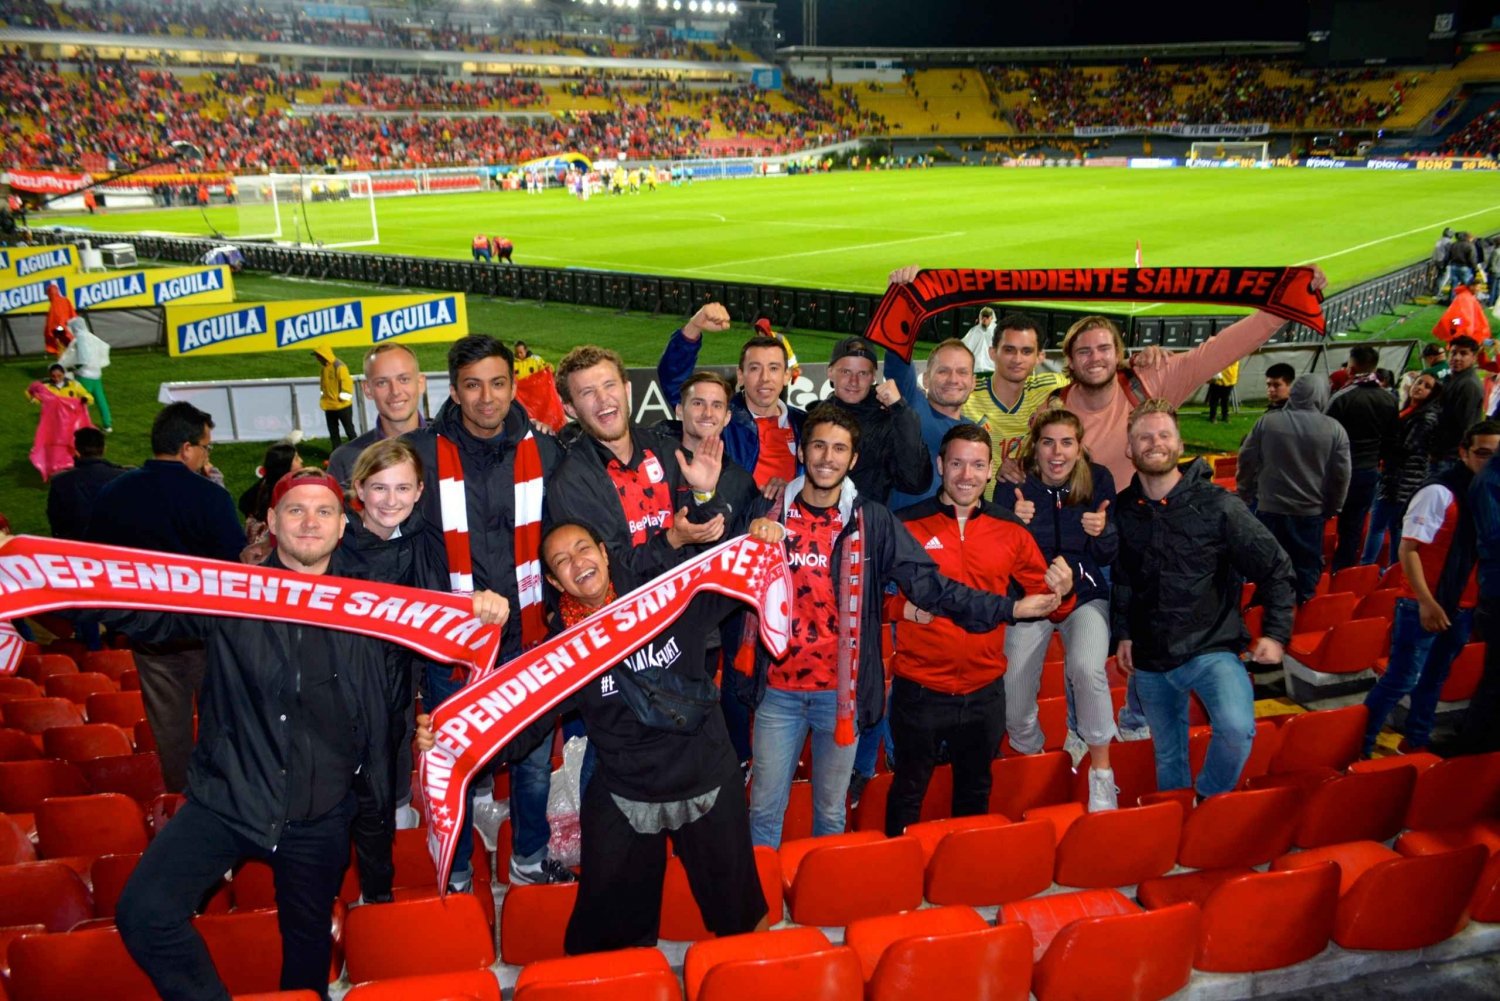 Tour de fútbol en Bogotá con tickets de entrada y experiencia previa al partido